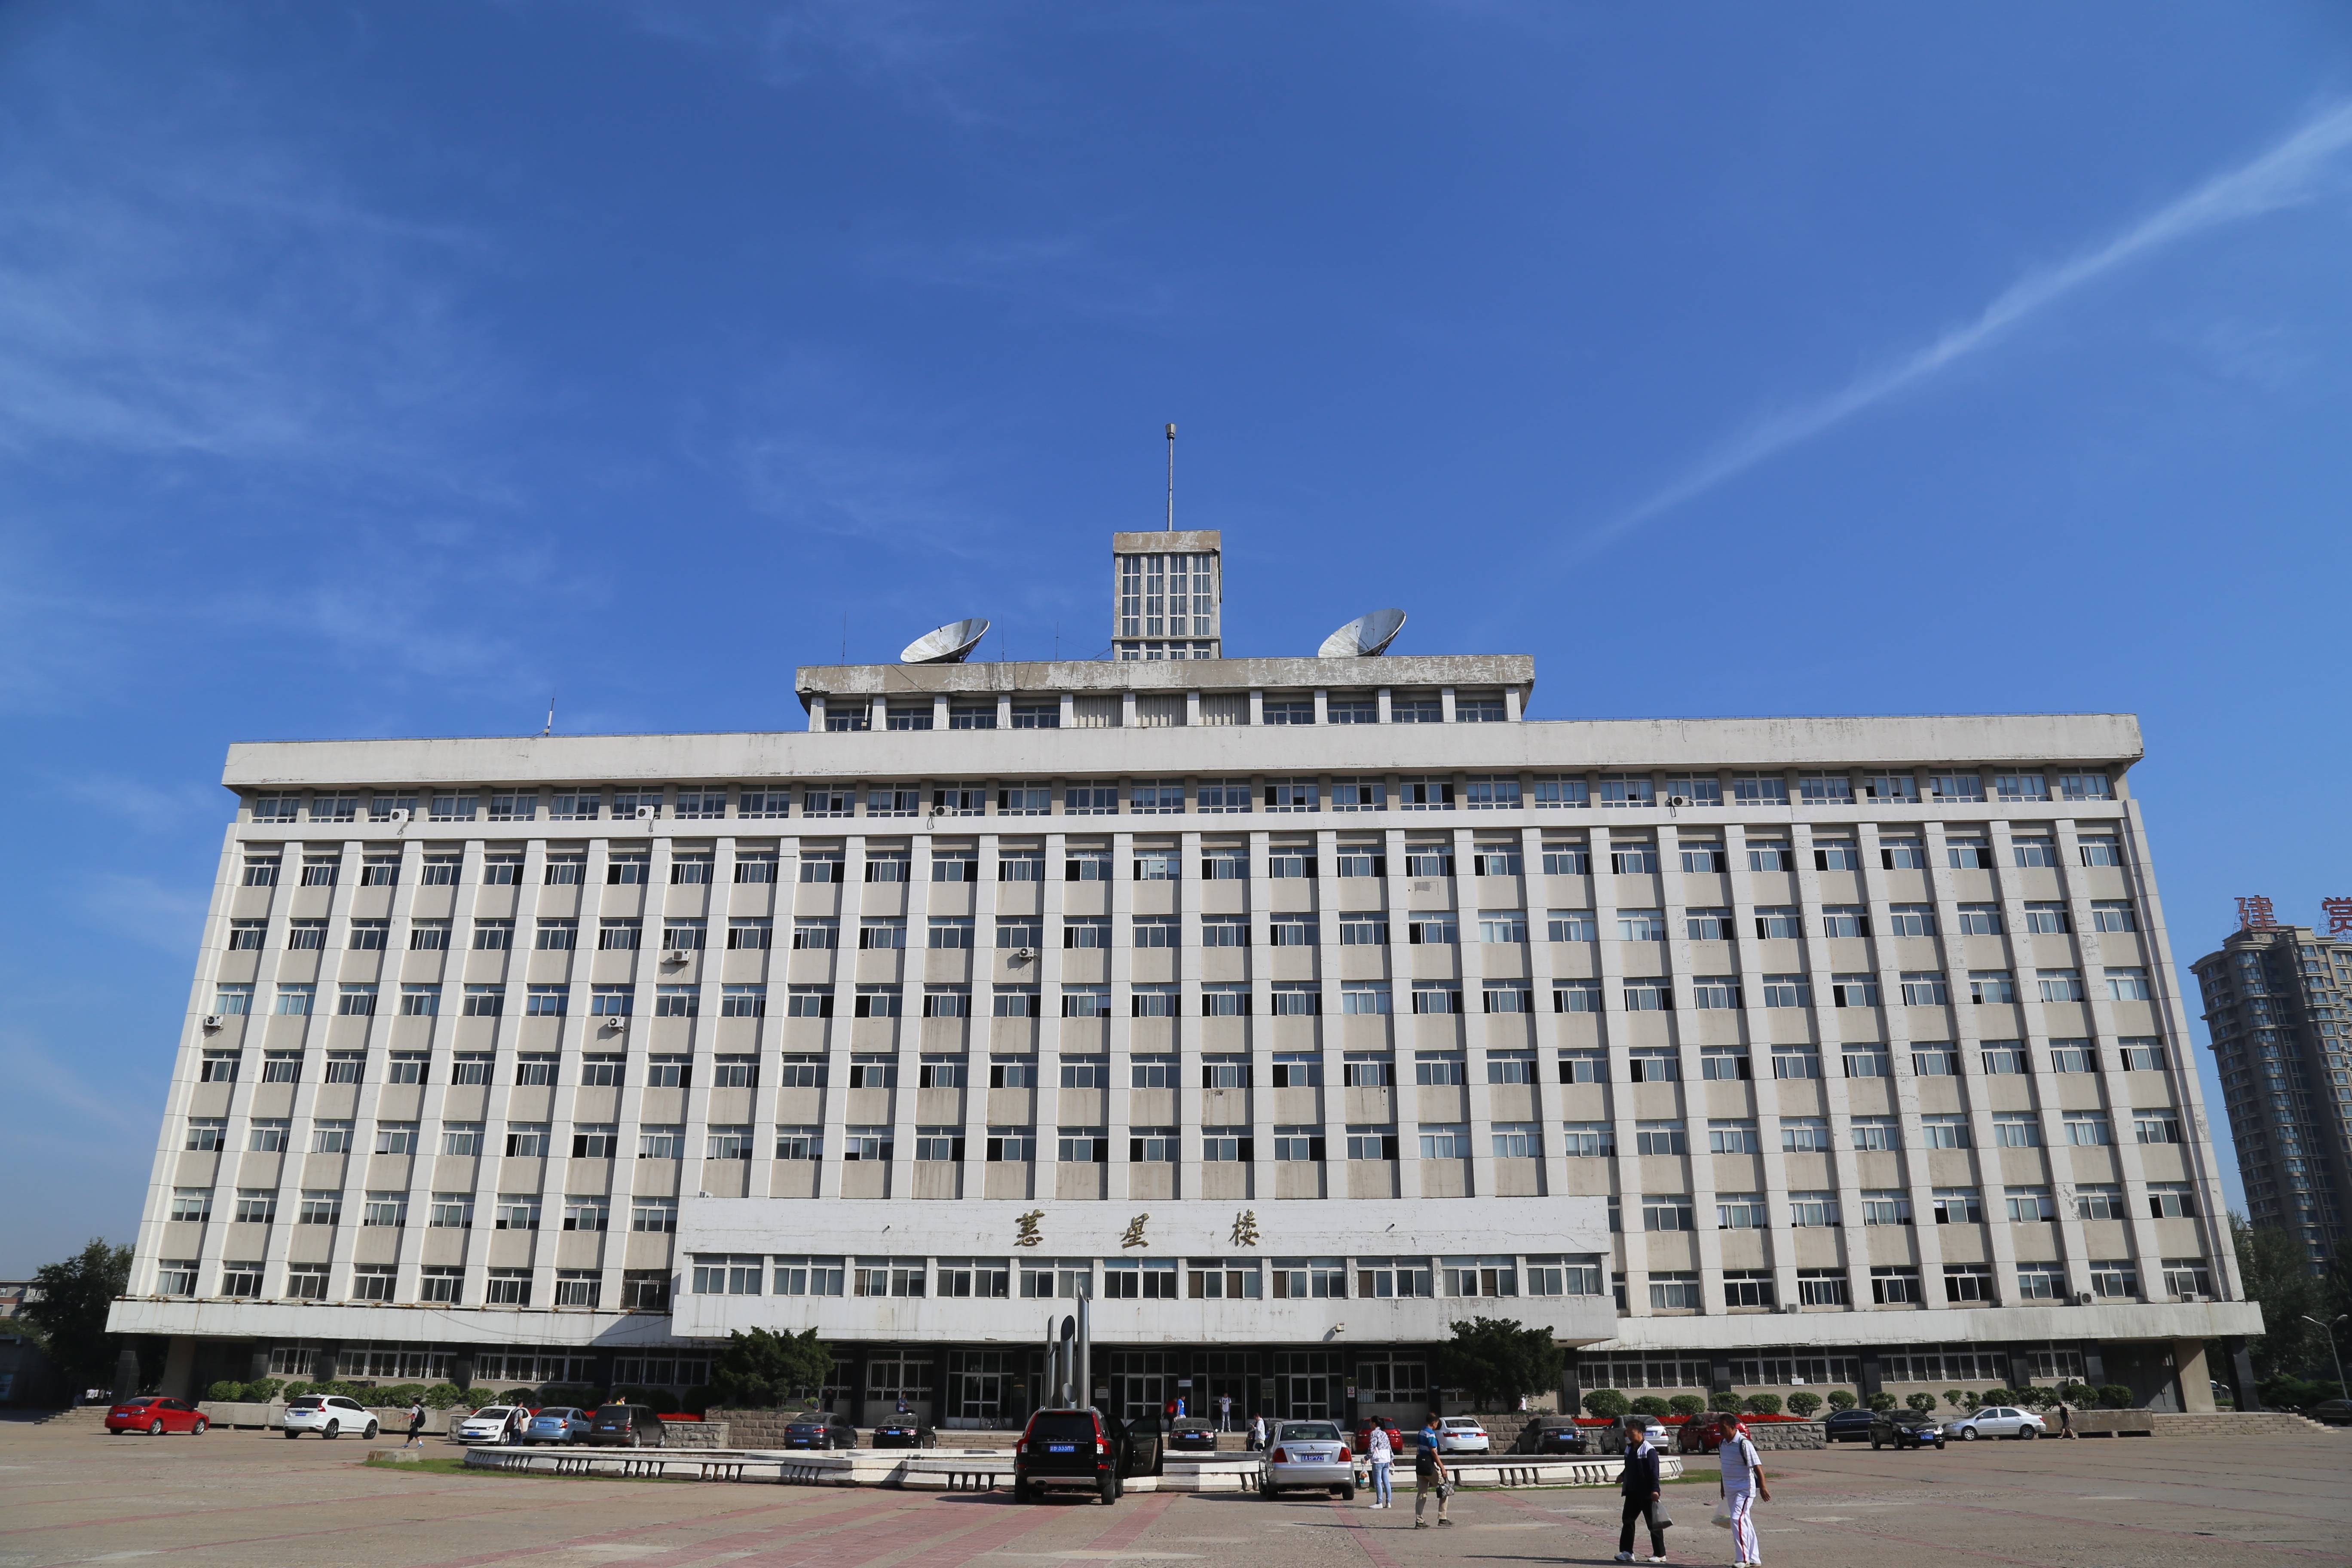 辽宁大学本身就是国内知名的211名校,拥有雄厚的教育资源,对于广大